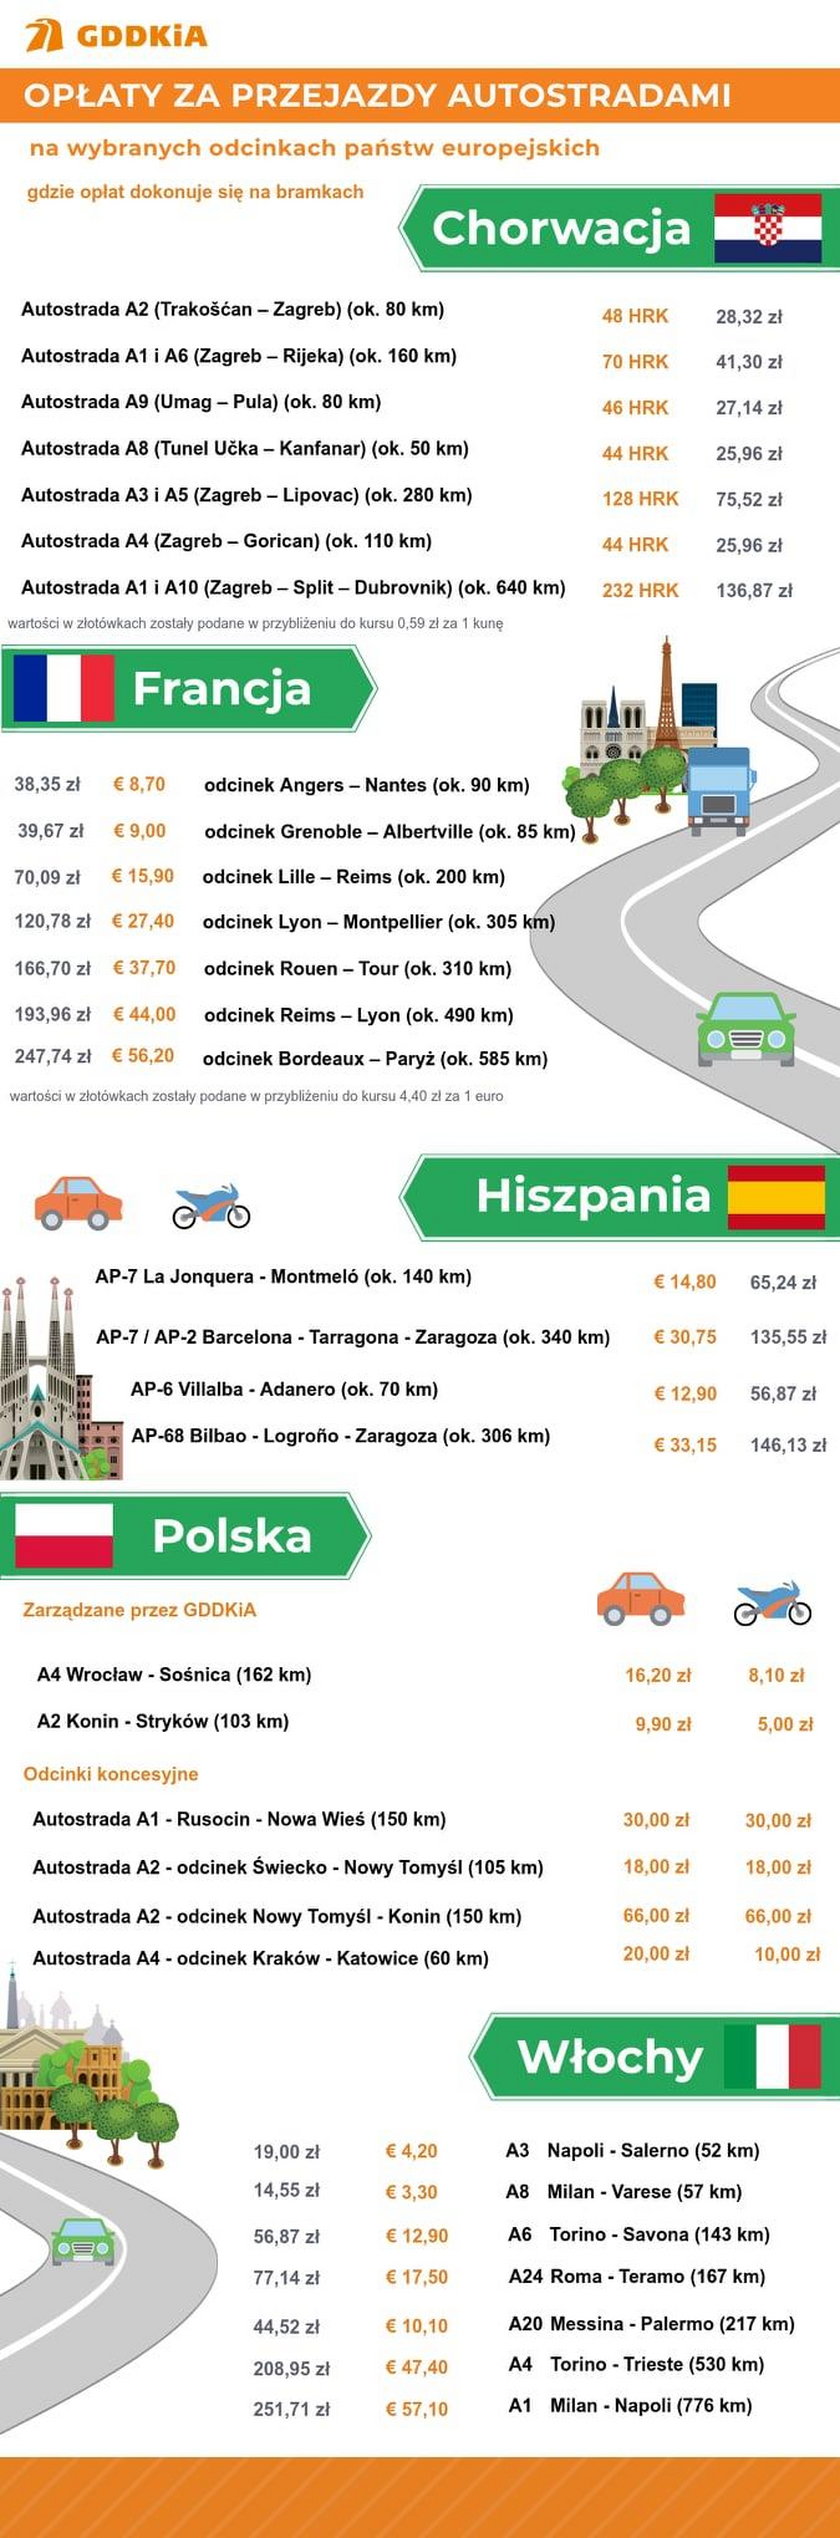 Opłaty za przejazd autostradami w Europie